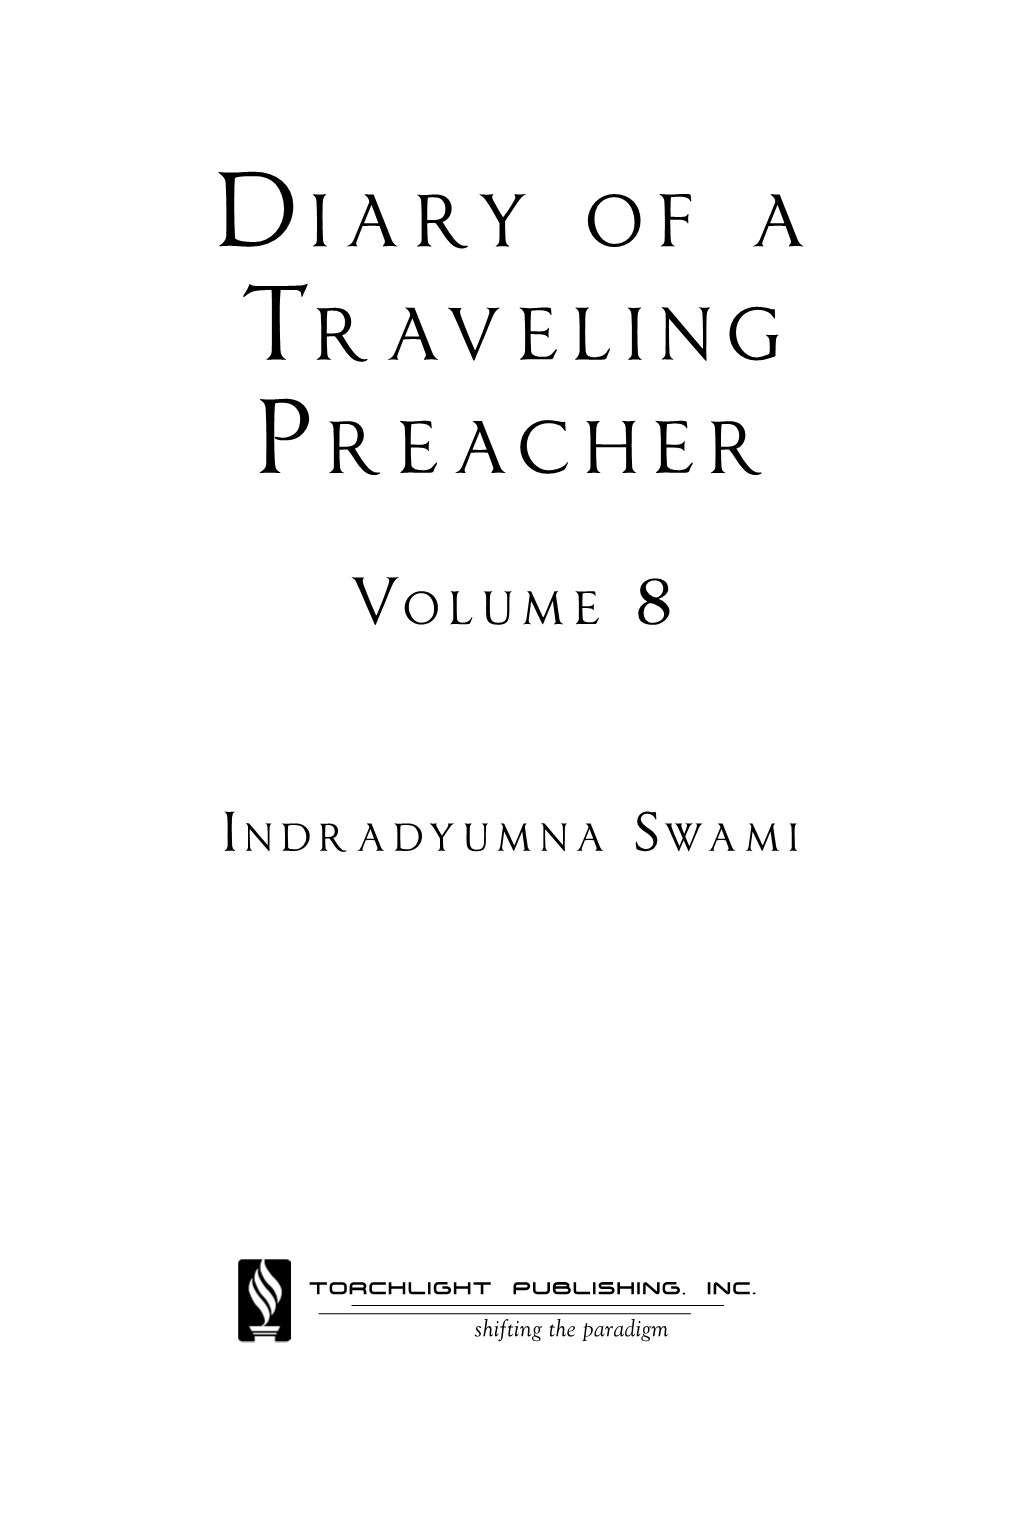 Di a Ry O F a Traveling Preacher